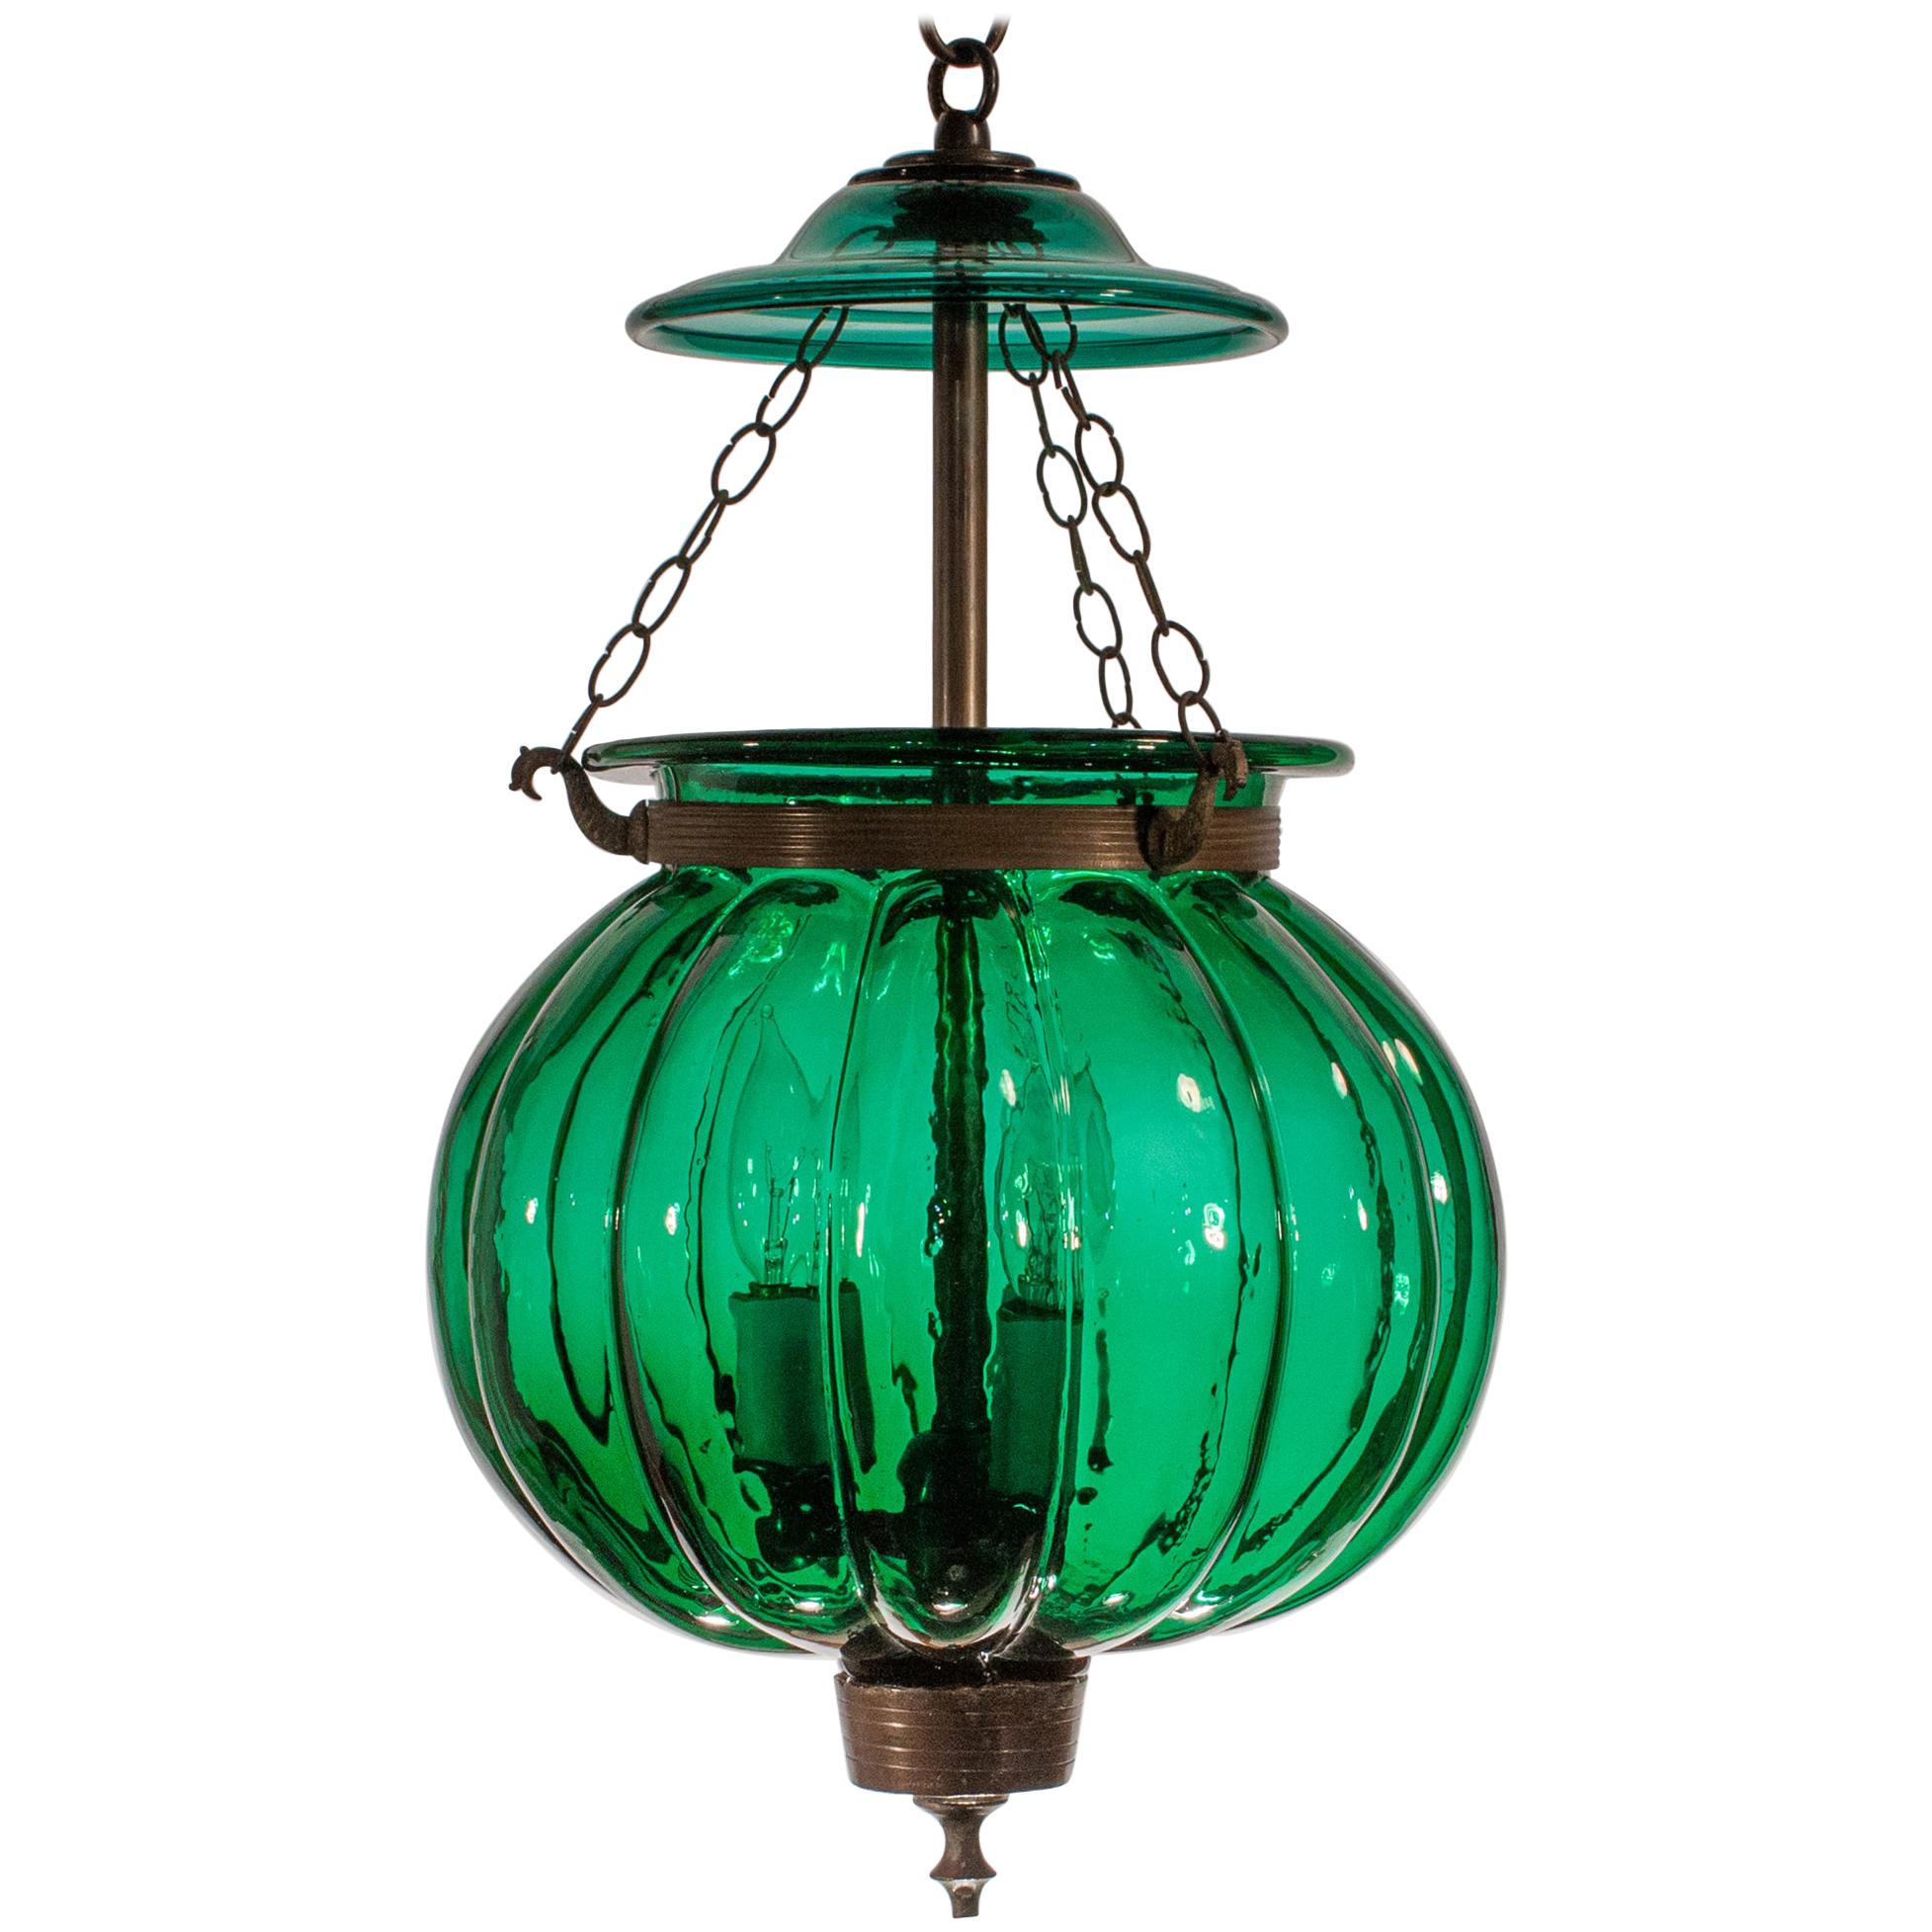 Antique Emerald Green Pumpkin or Melon Bell Jar Lantern